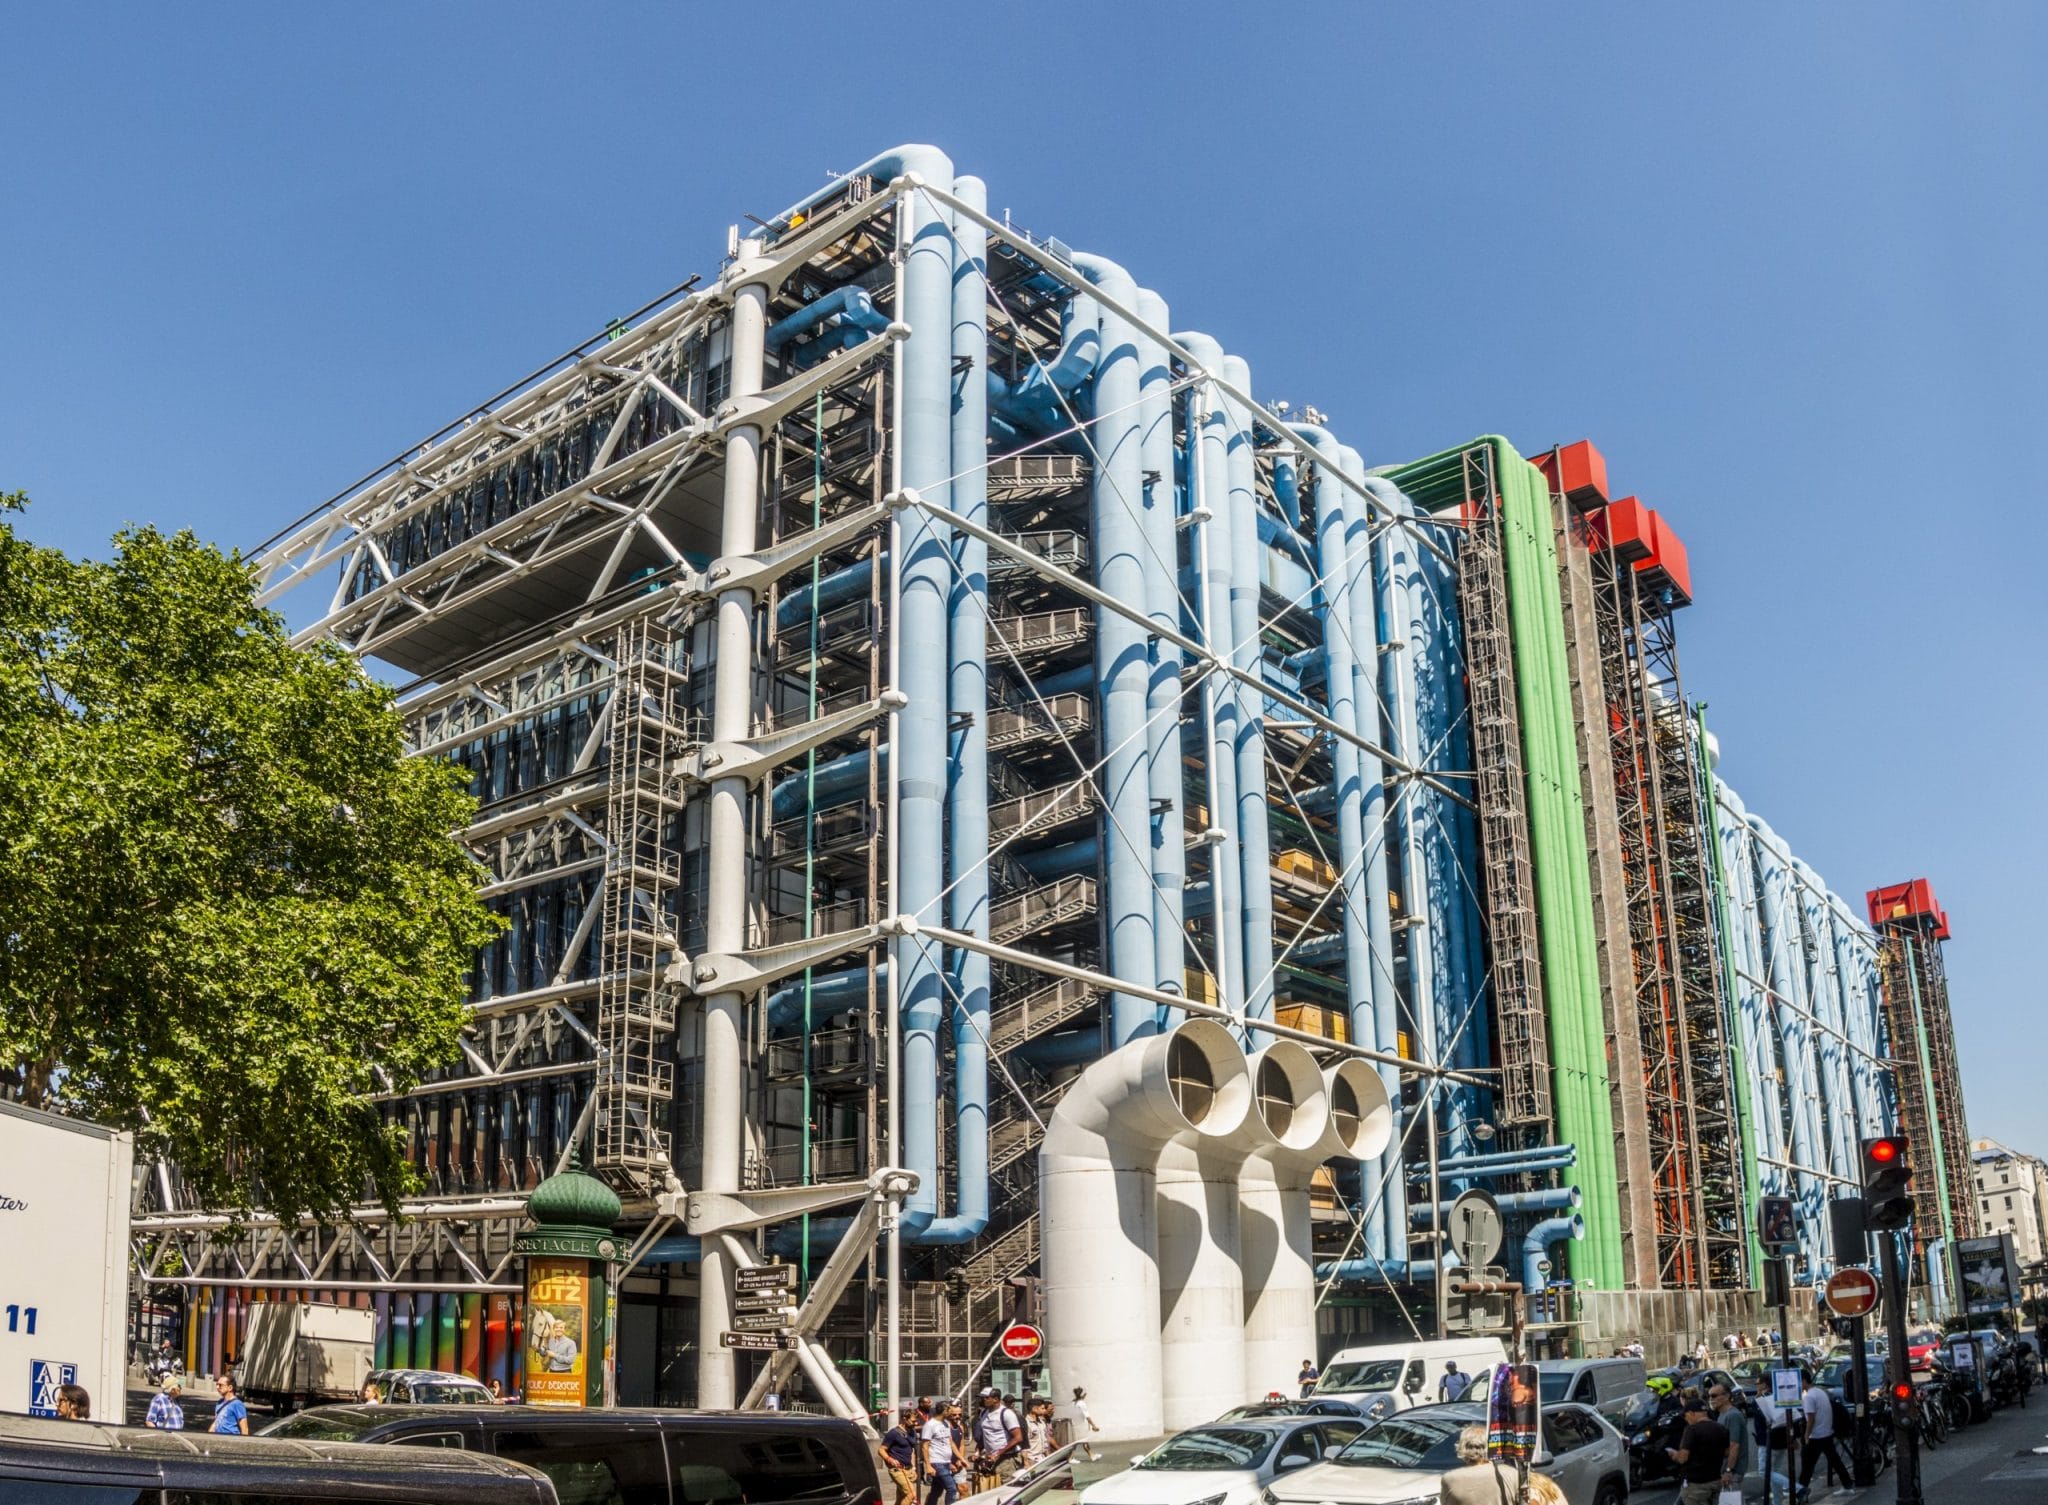 Paris : Effractions, le festival de littérature contemporaine du Centre Pompidou